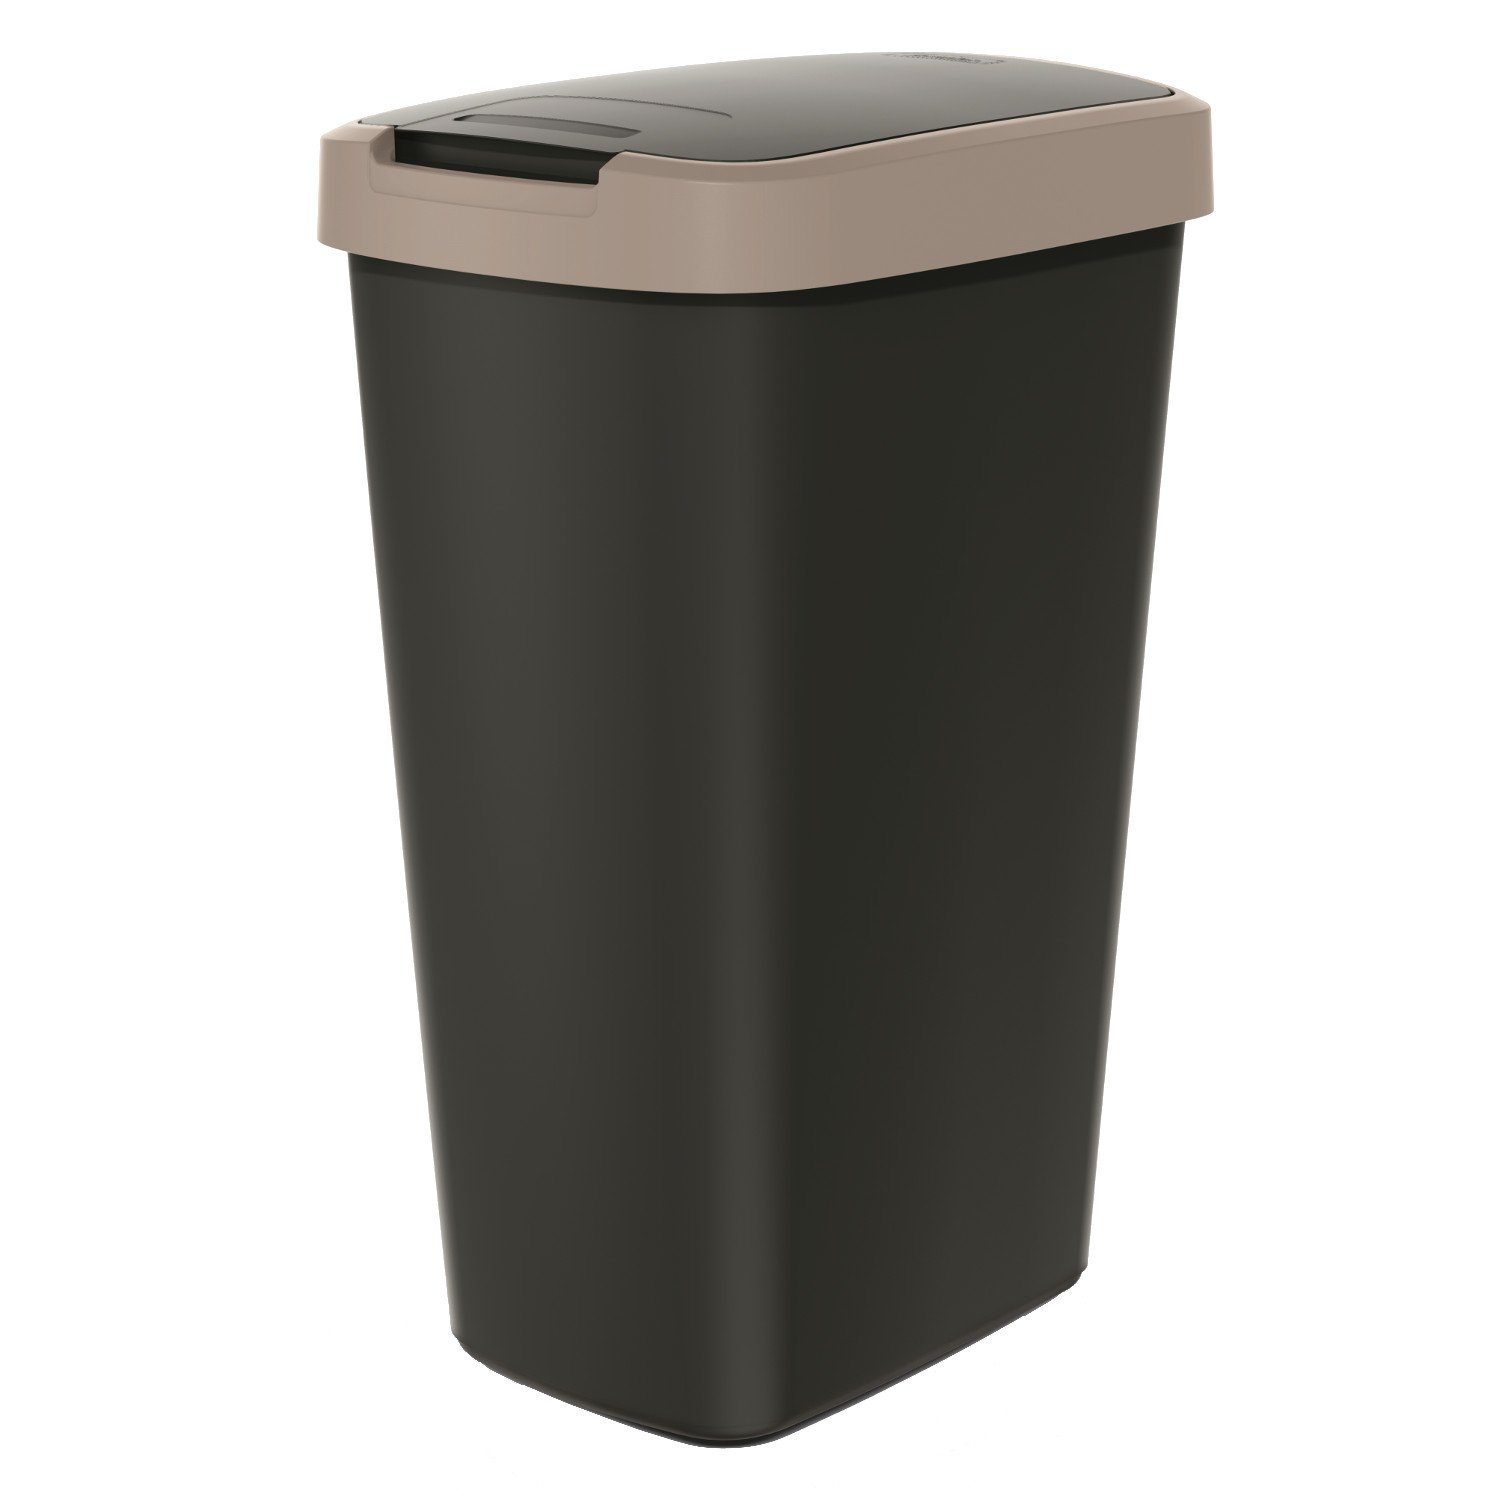 Keden Mülleimer Compacta Q, Abfallbehälter 45l mit Deckel KEDEN COMPACTA Q Braun